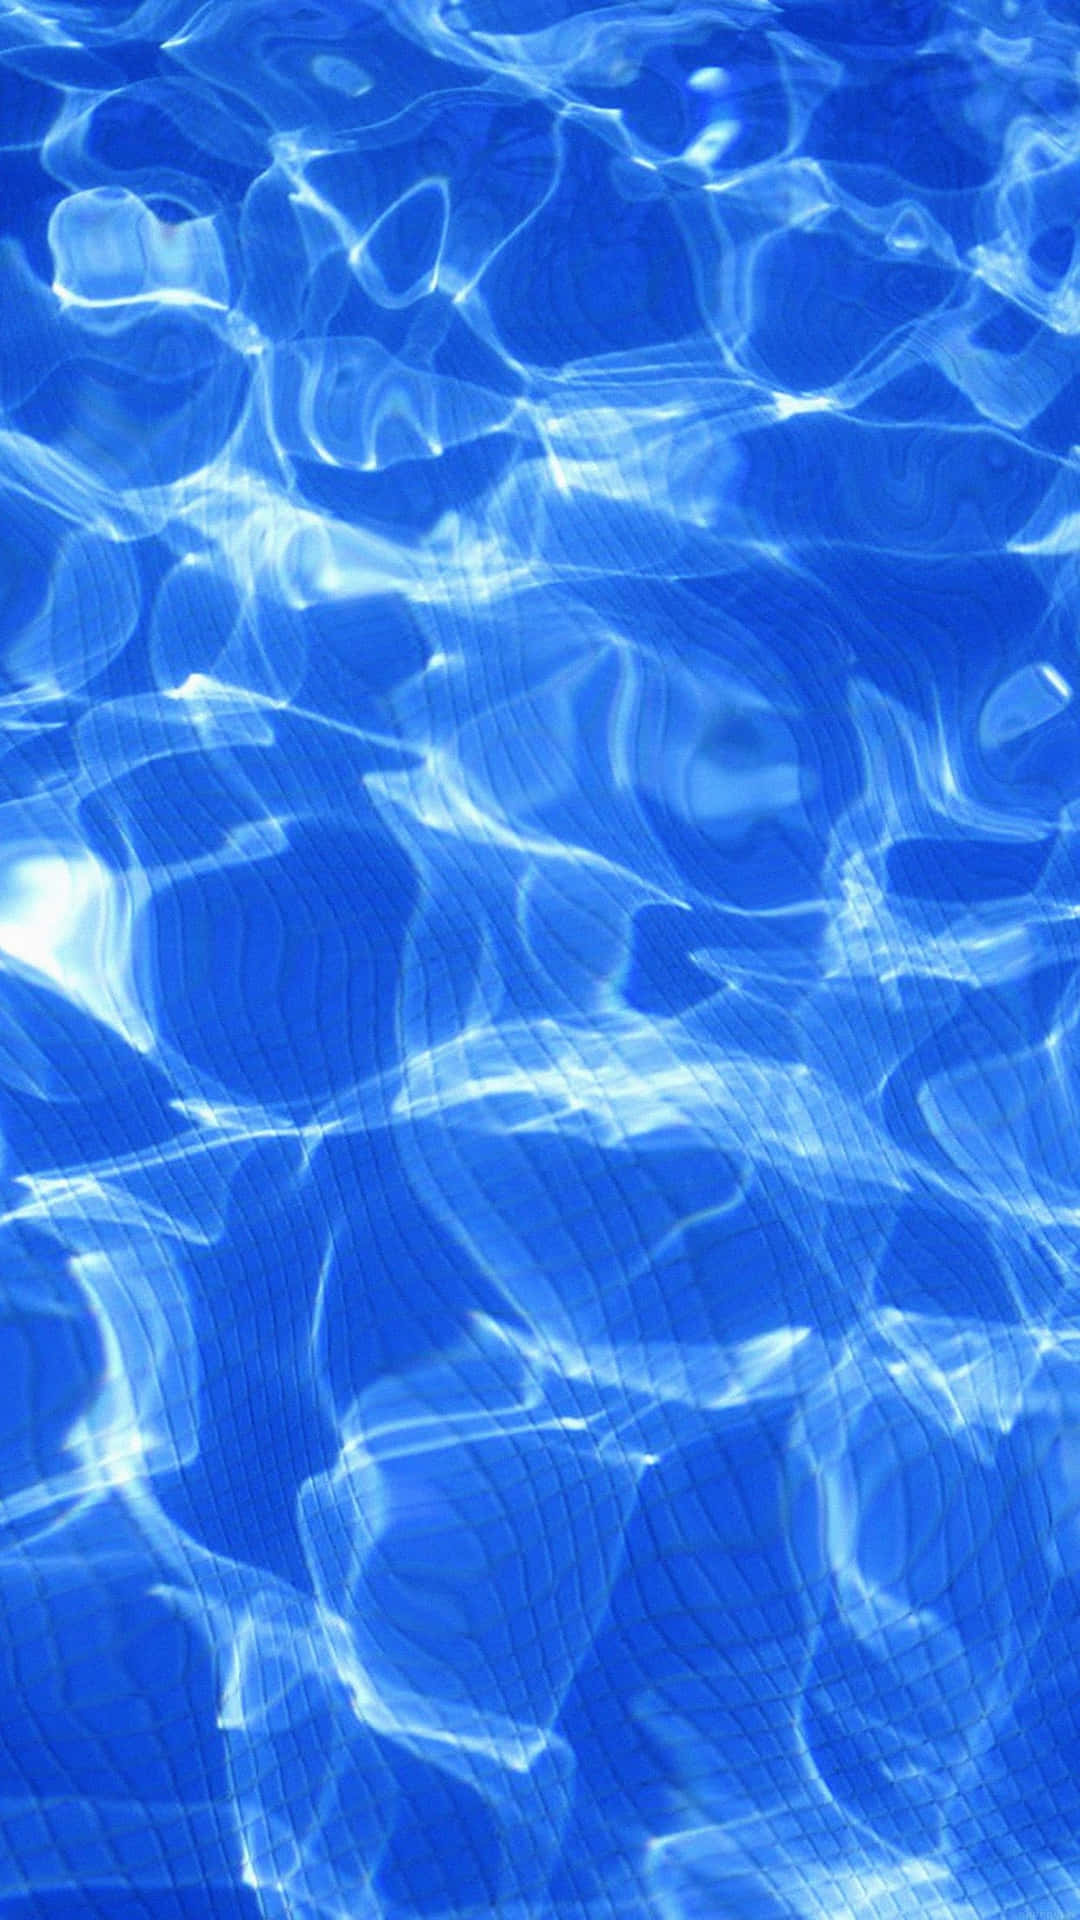 Enblå Pool Med Rippeldrag I Vattnet. Wallpaper